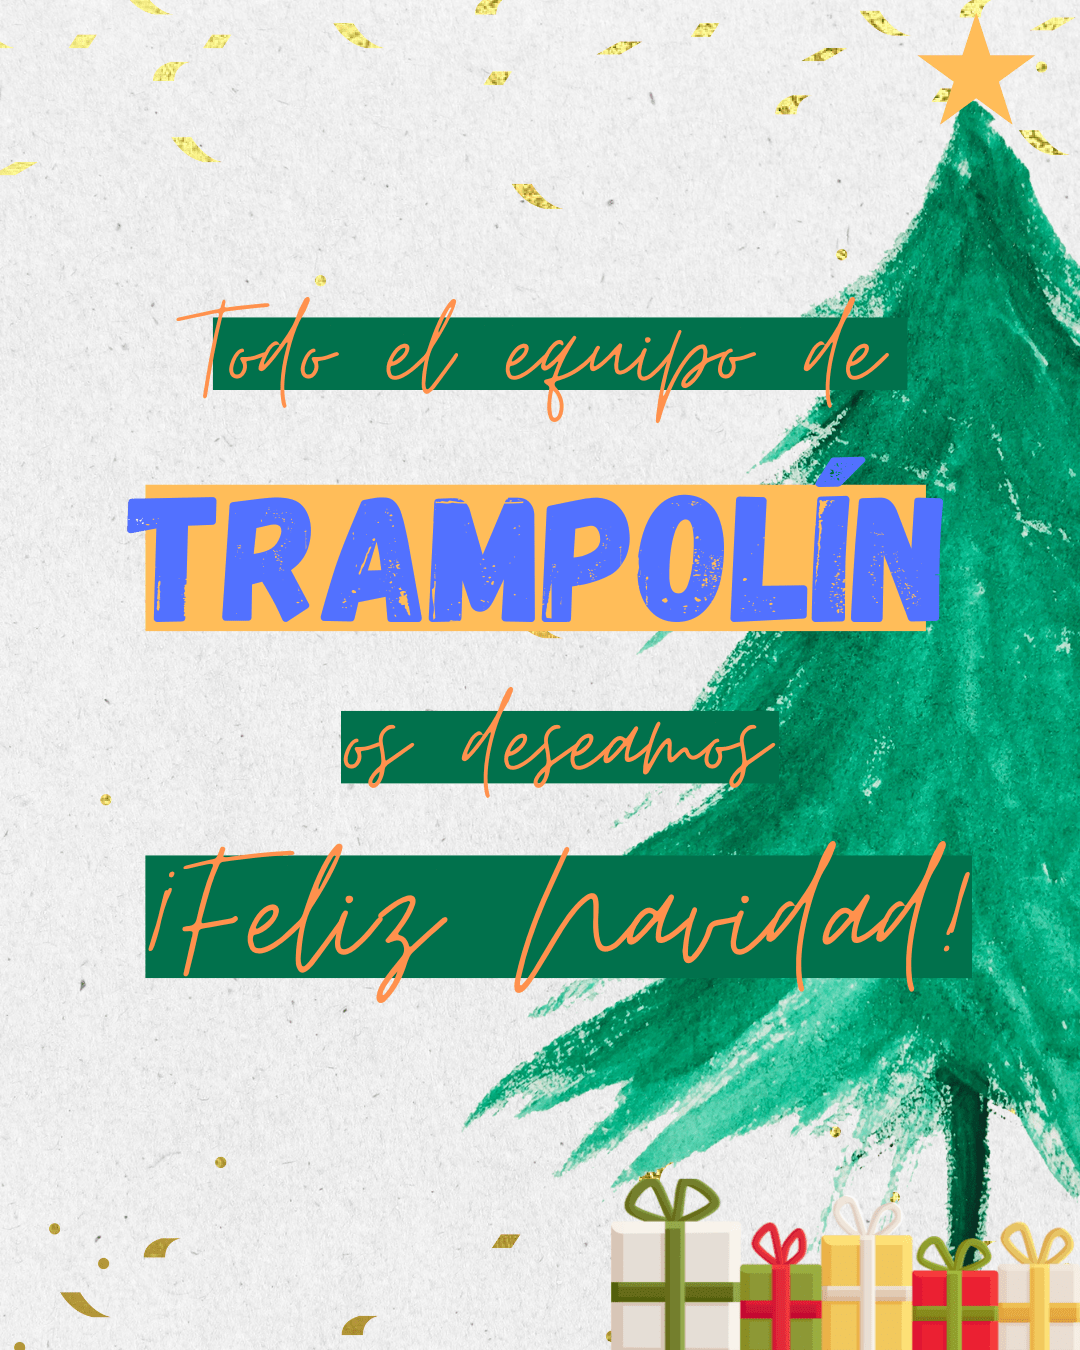 El equipo de Trampolín os deseamos una Navidad llena de amor, paz y felicidad para todos vosotros y vuestras familias.